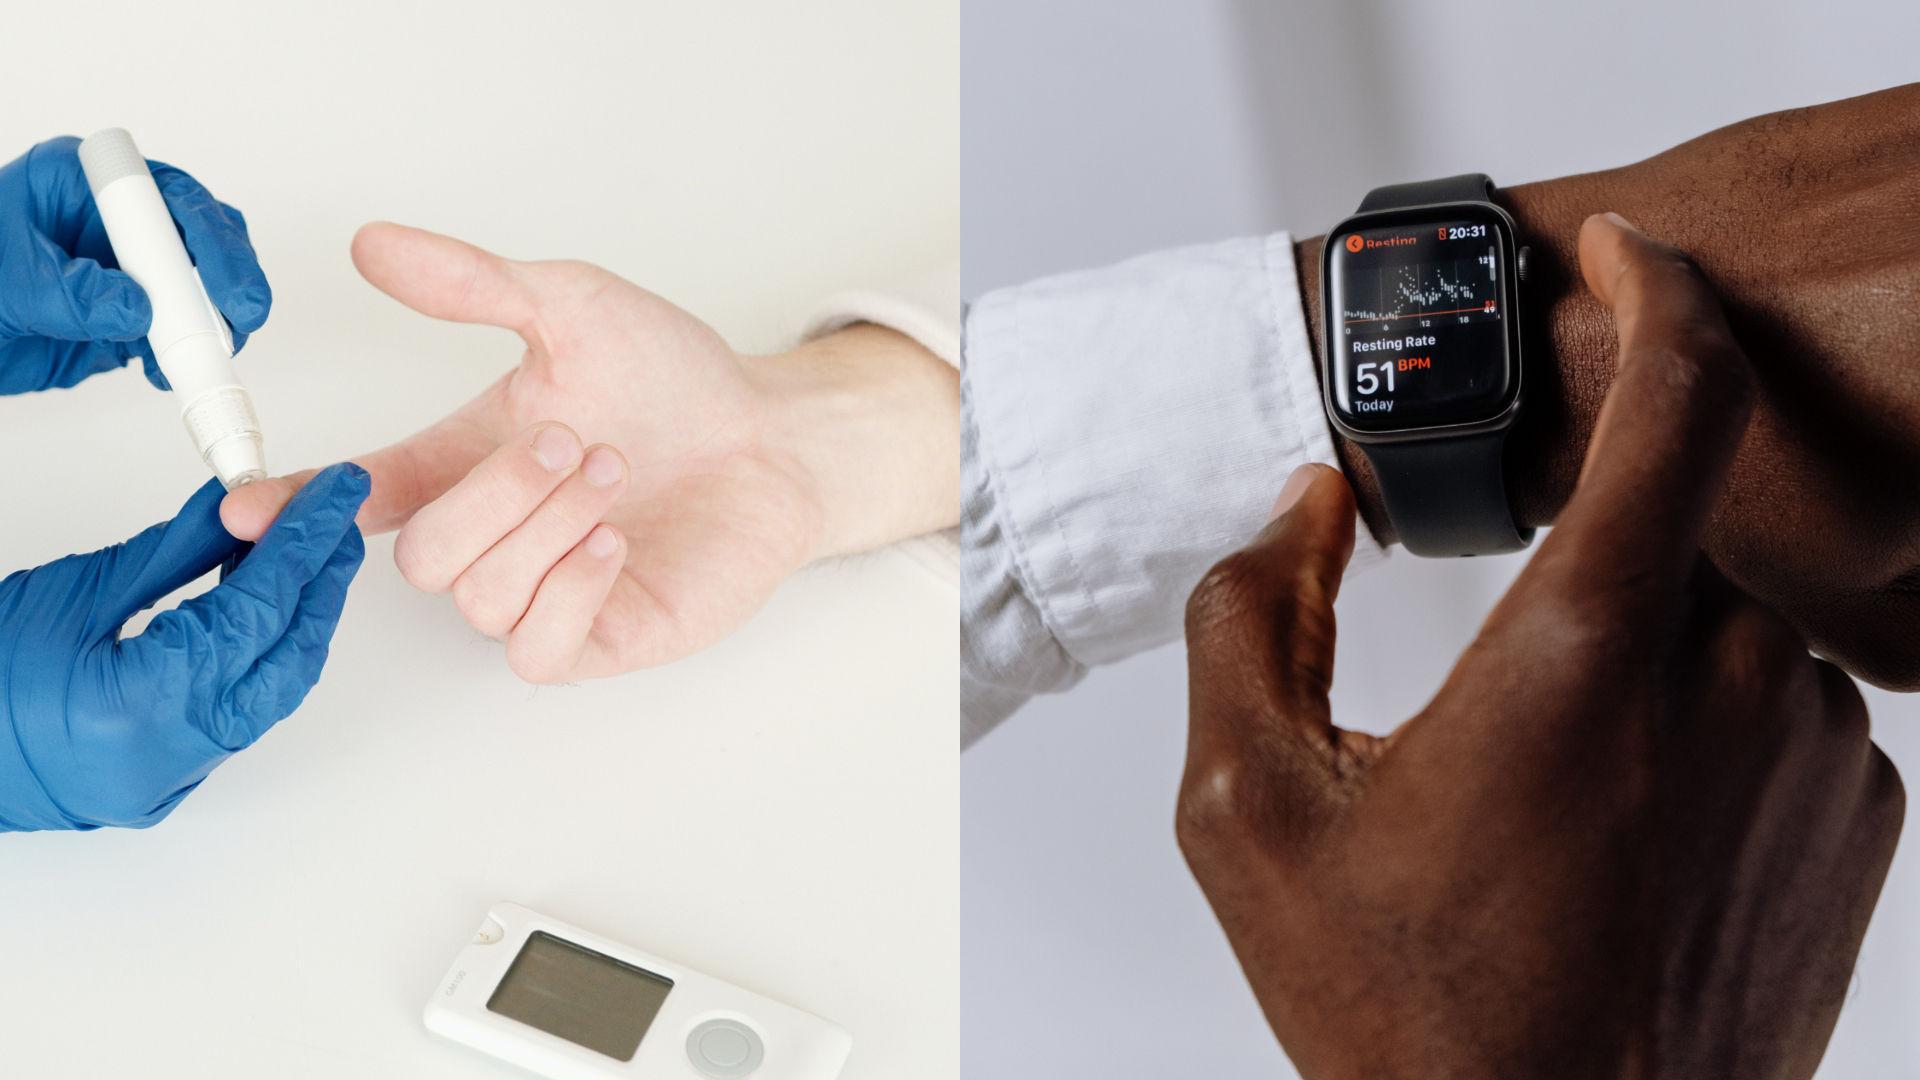 اخطار FDA در خصوص حلقه ها و ساعت های هوشمندی که ادعا می کنند بدون سوزن قادر به اندازه گیری قند خون هستند 